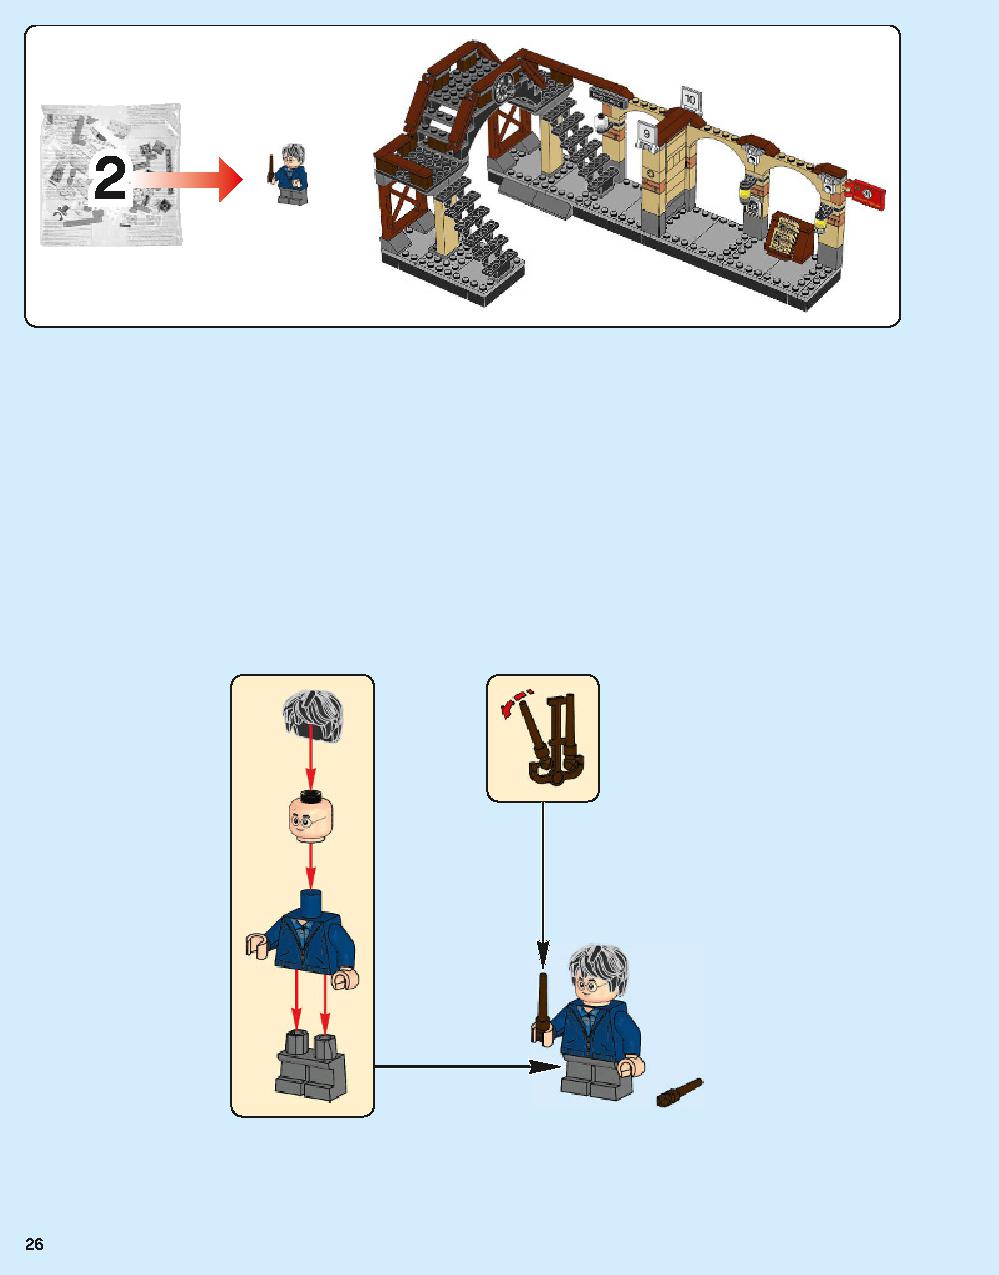 Hogwarts Express 75955 LEGO information LEGO instructions 26 page